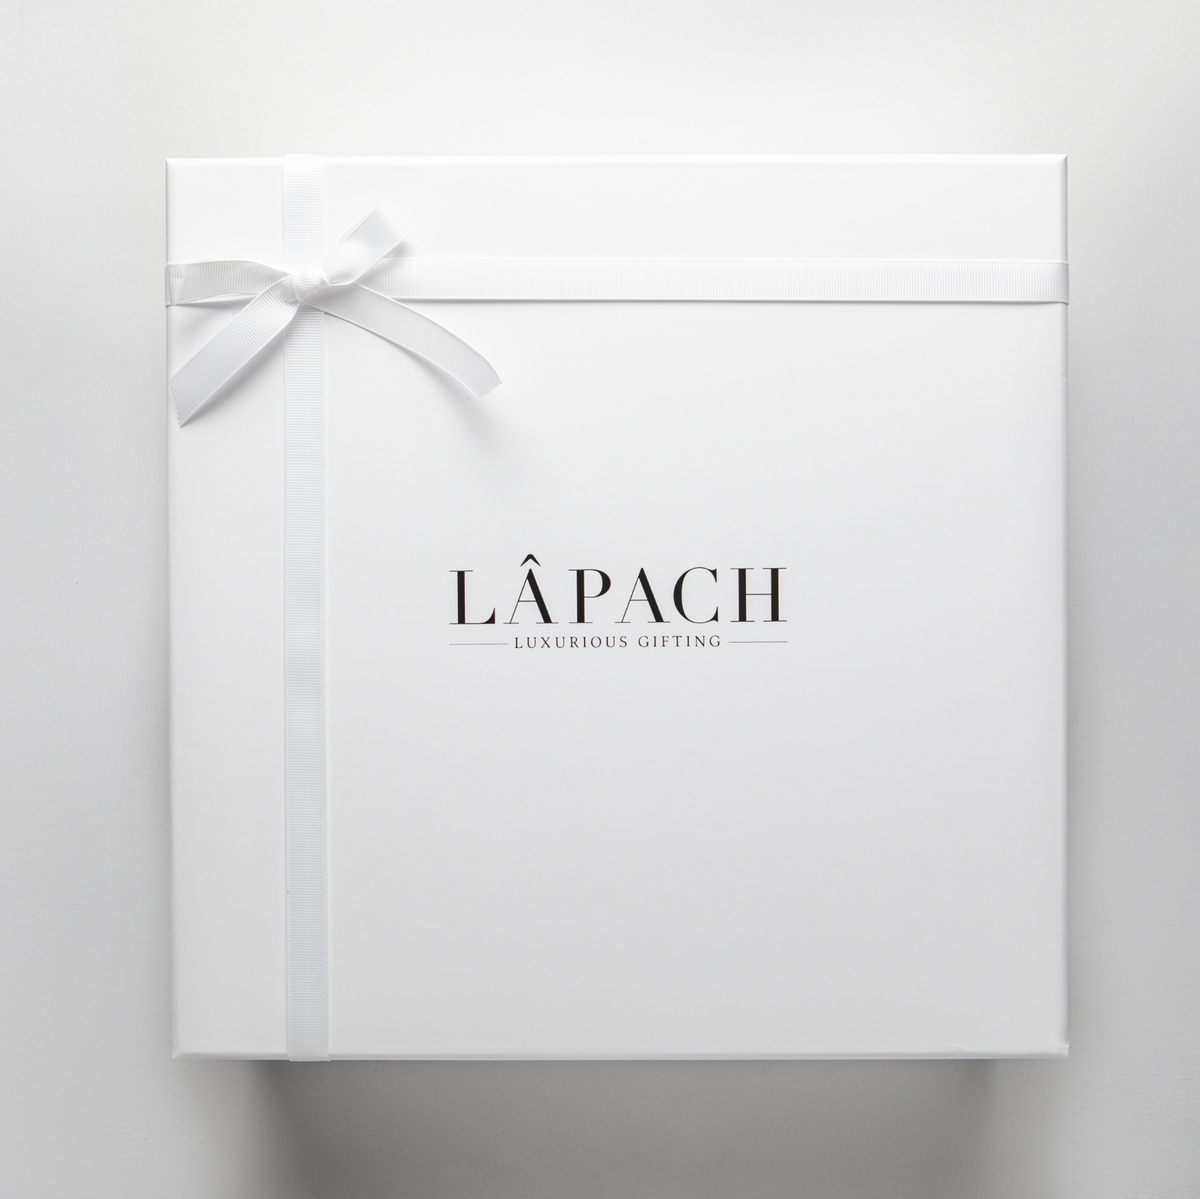 White LÂPACH gift box